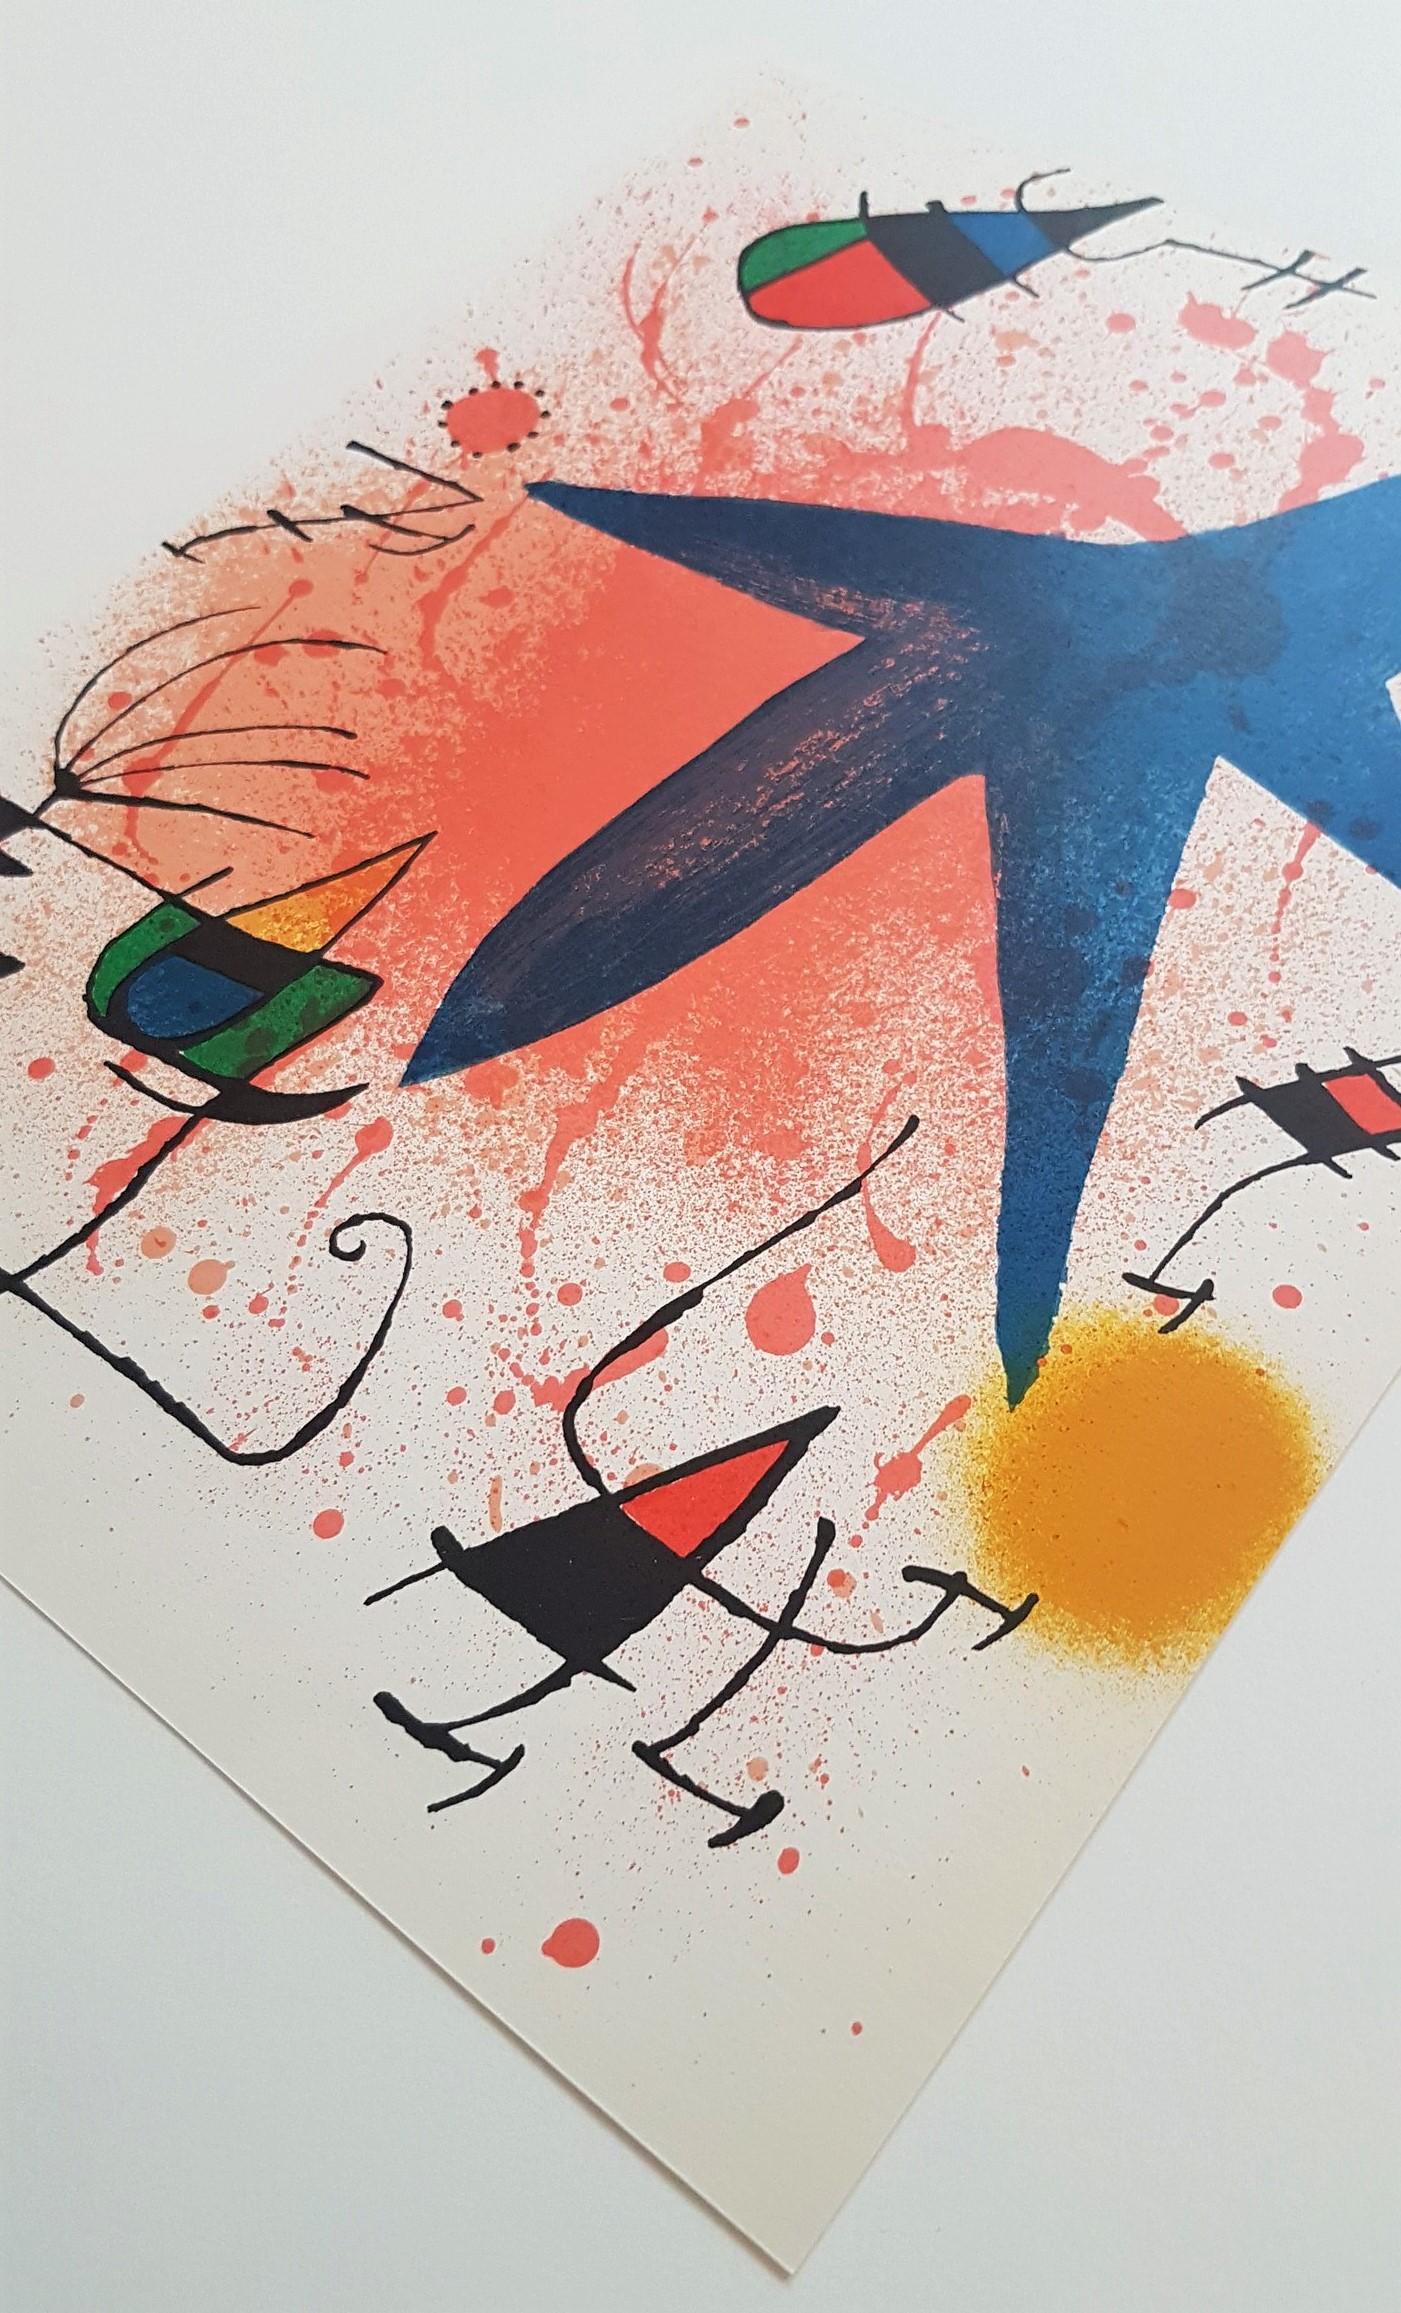 Litografia Original I - Print by Joan Miró